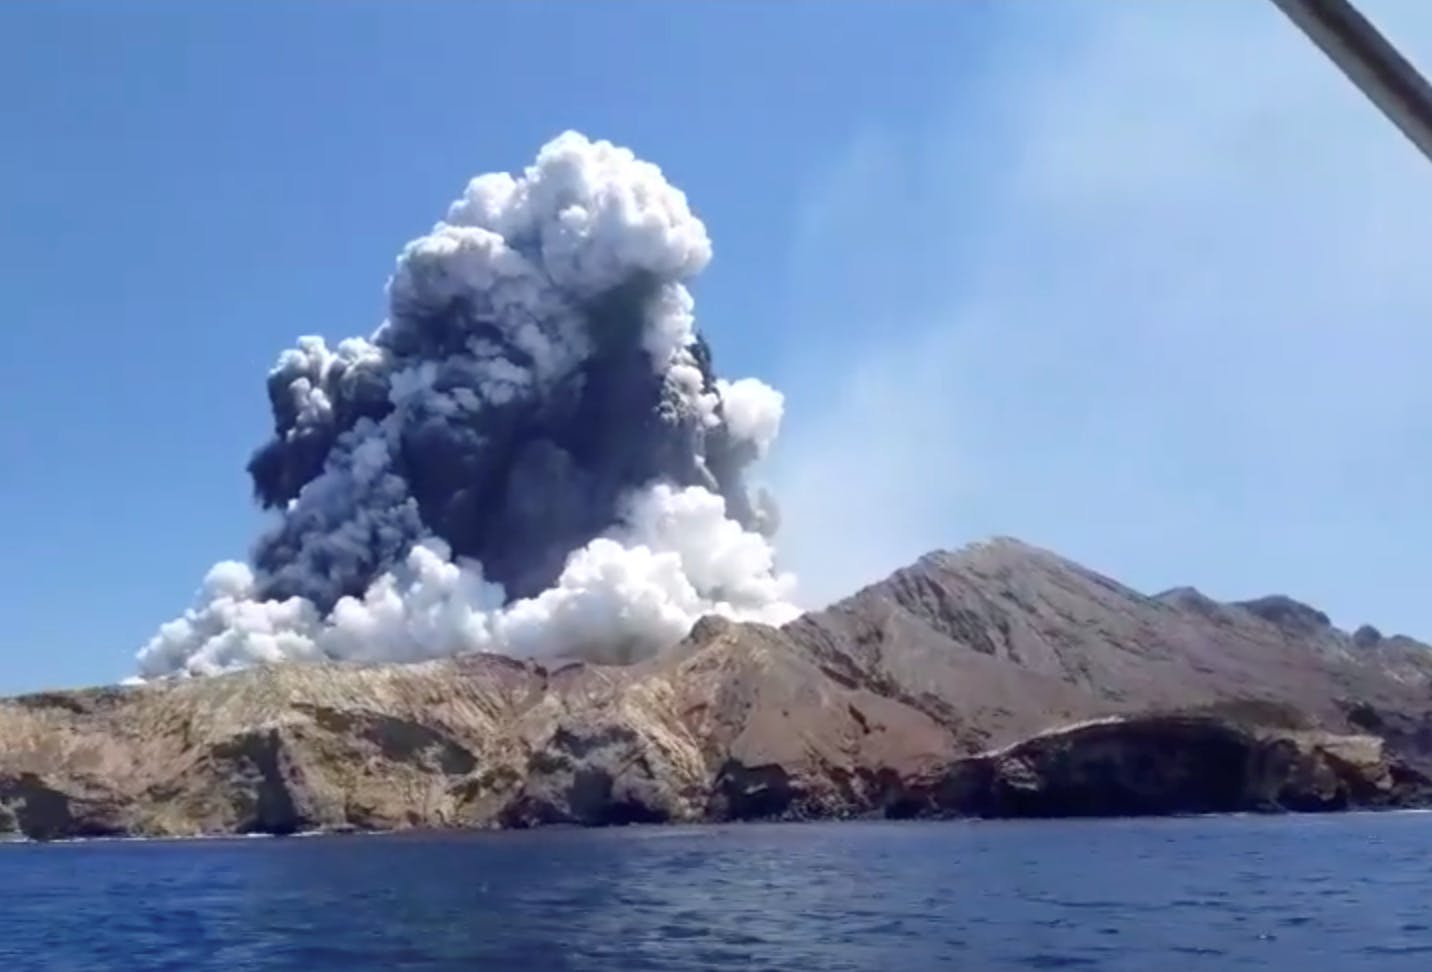 Turister på en nærliggende båd fotograferede øjeblikket, hvor vulkanen gik i udbrud og spyede store mængder brændende sten og aske i luften.
